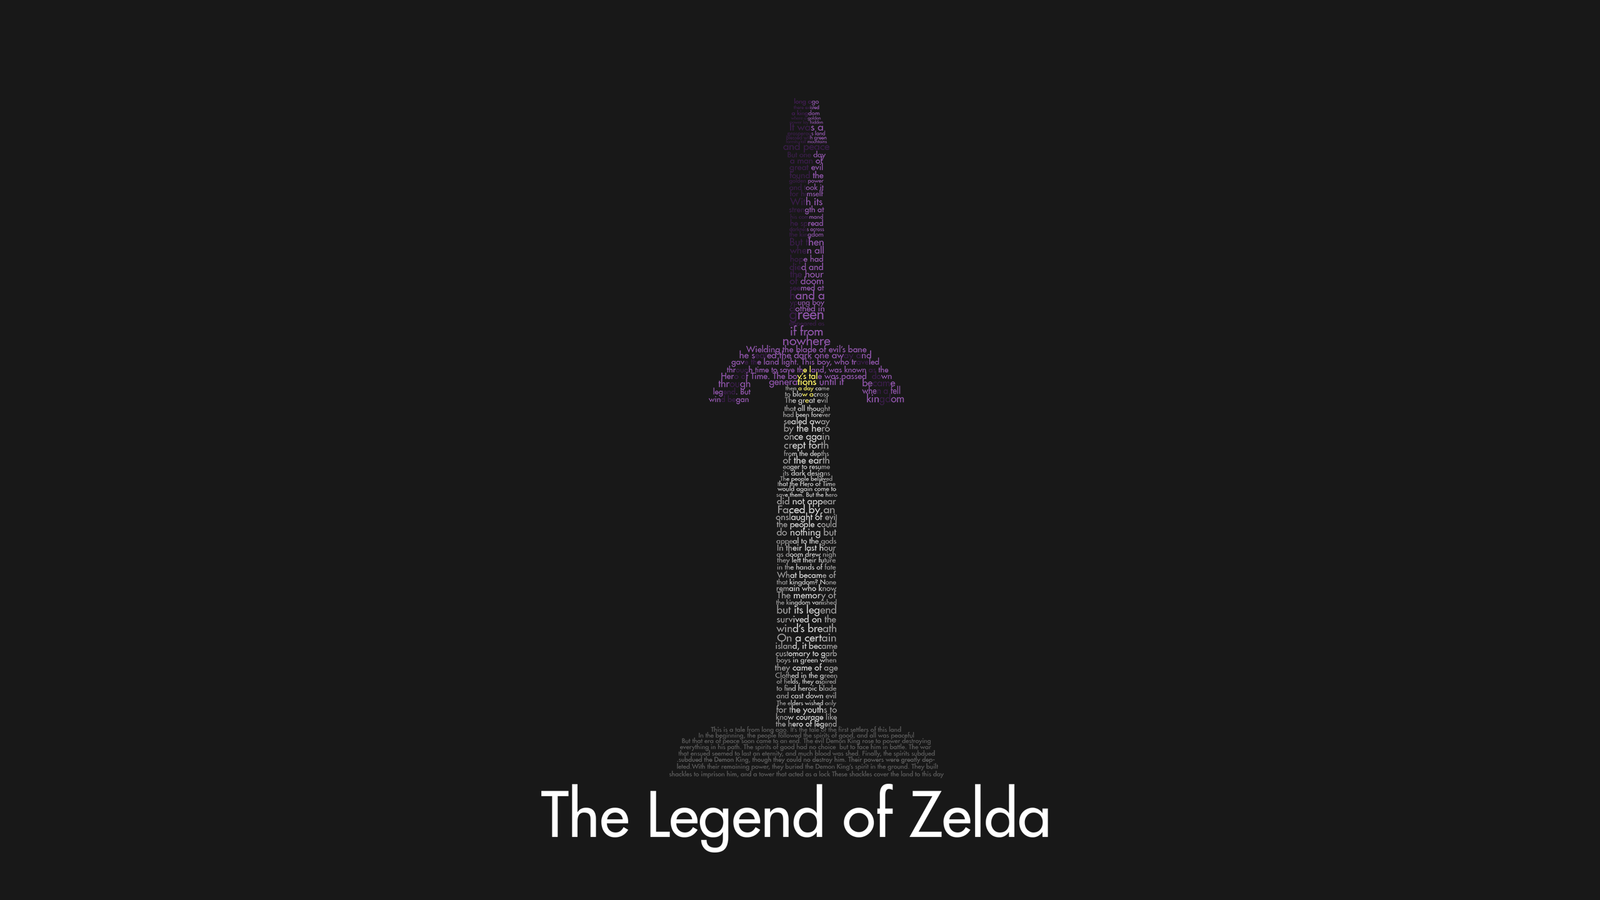 Free download Master Sword Zelda Wallpaper Master Sword Wallpaper